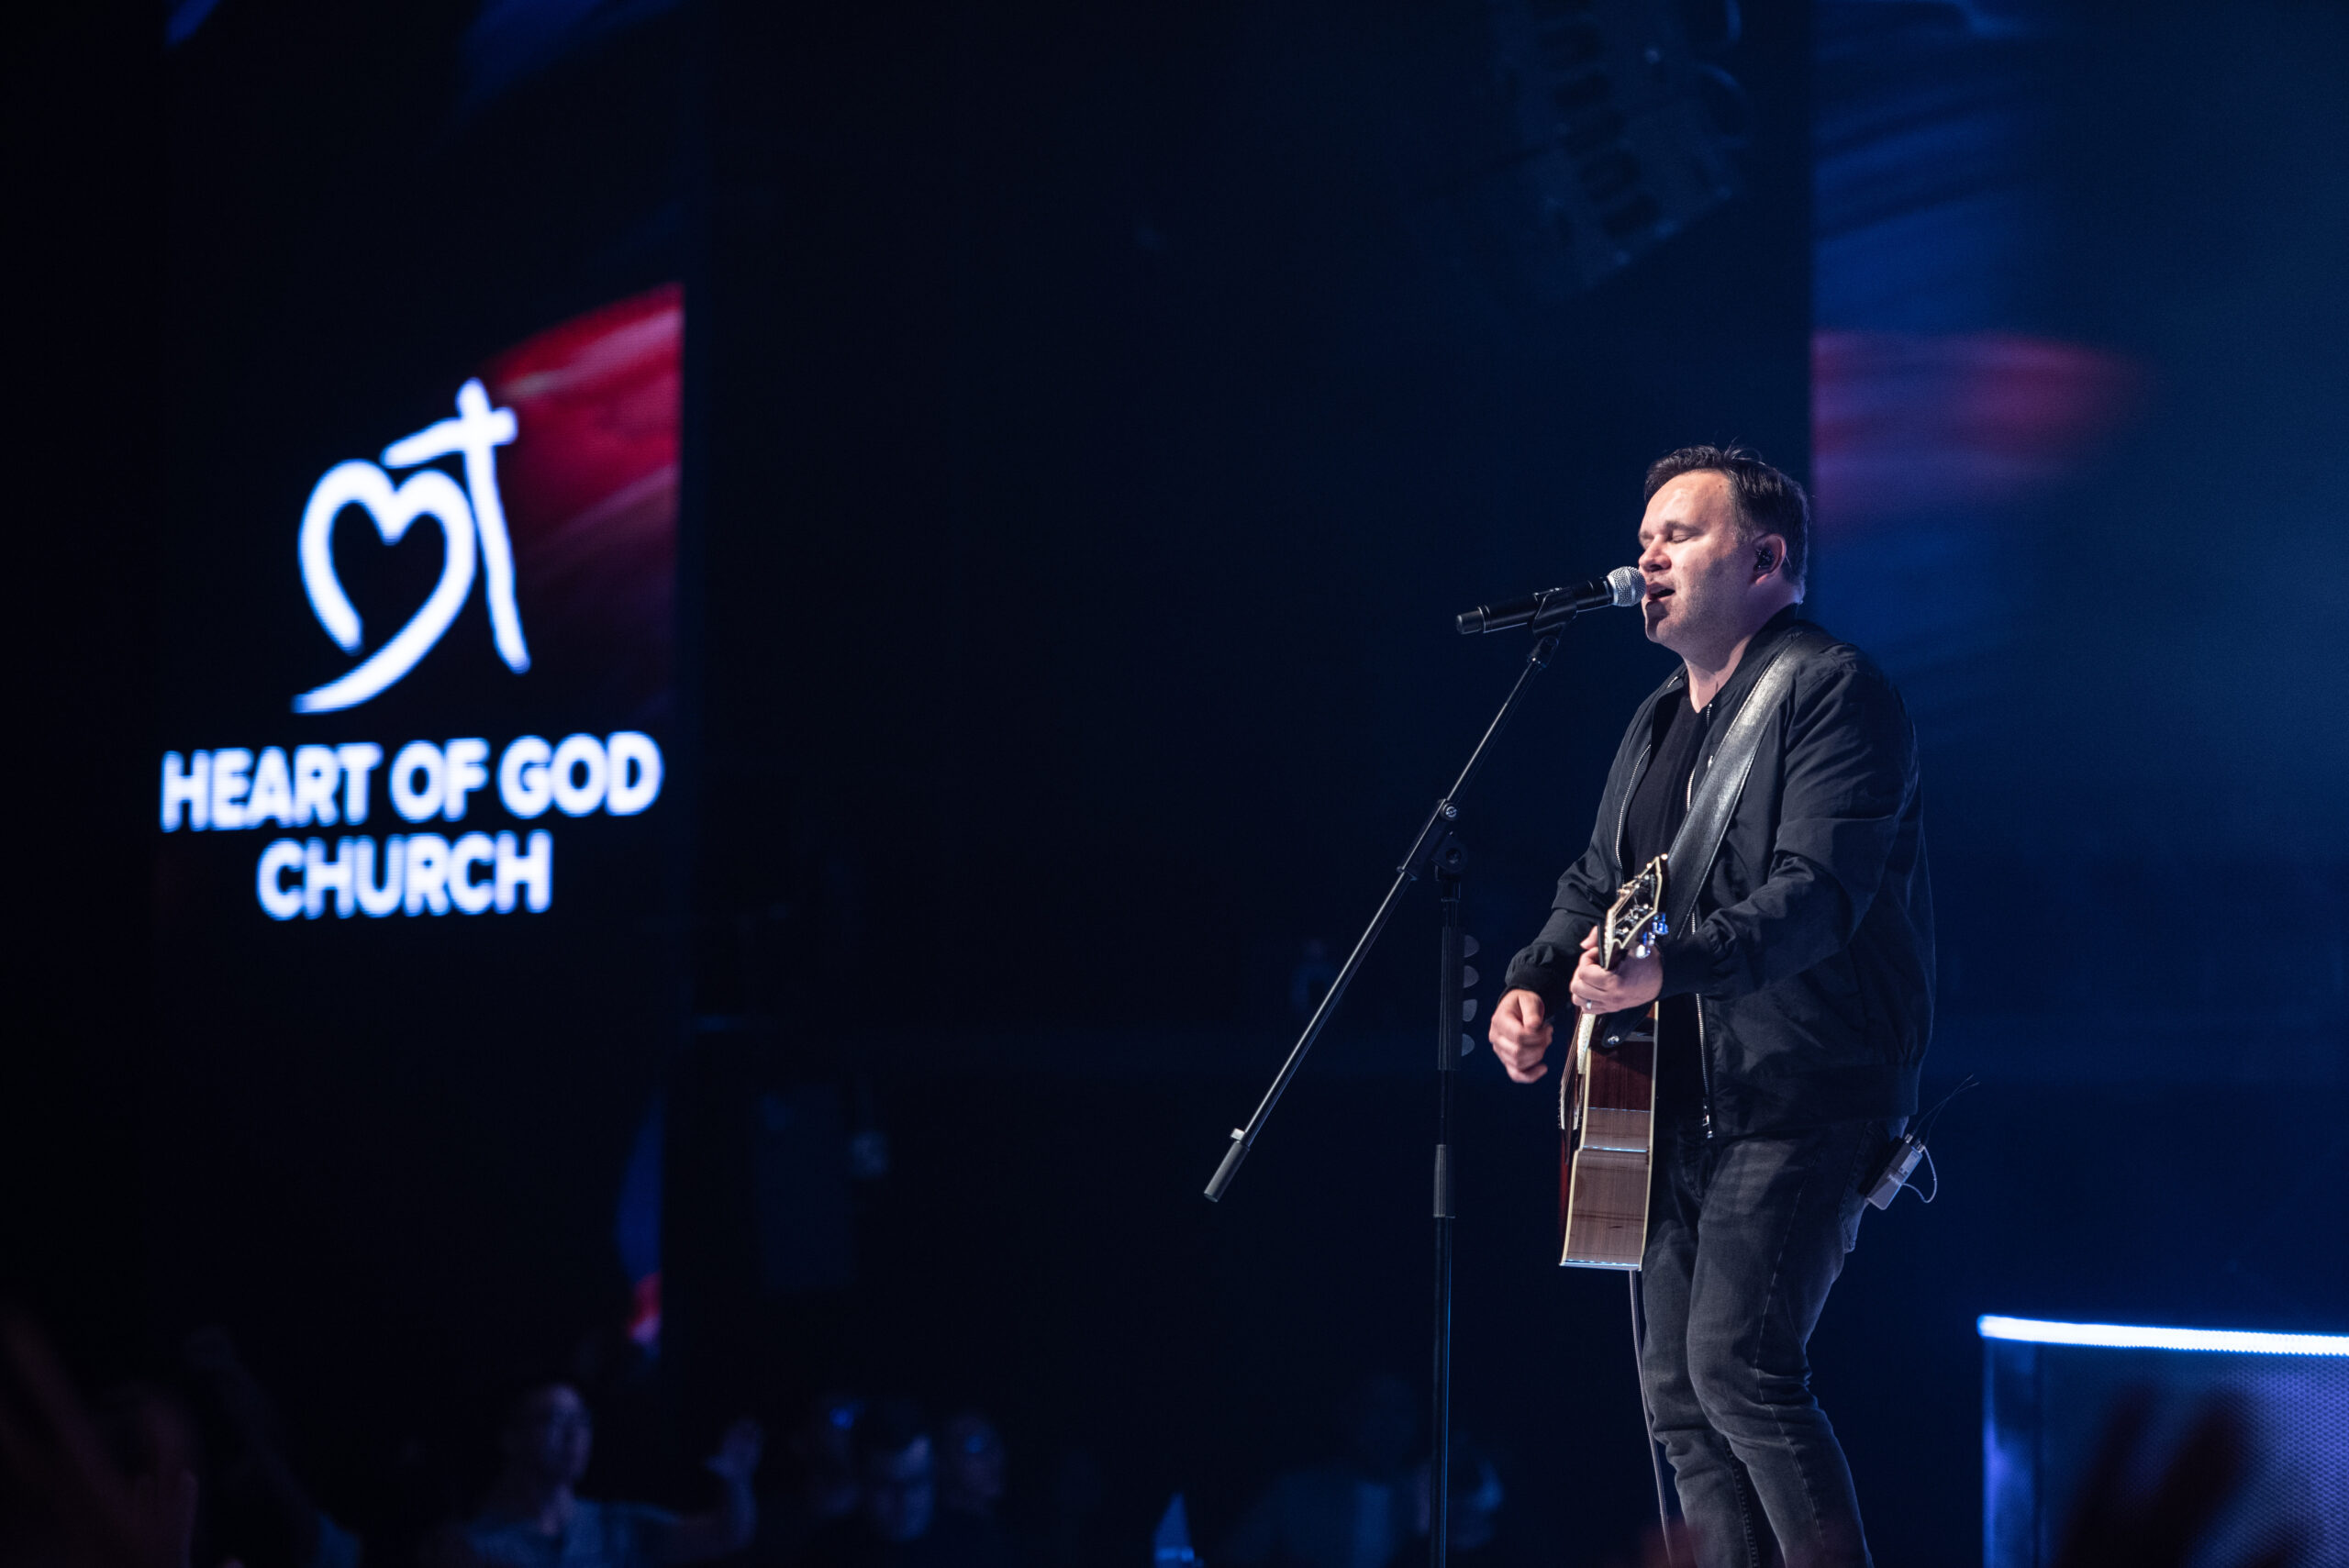 Matt Redman filmed the official live music video for The Same Jesus at Heart of God Church